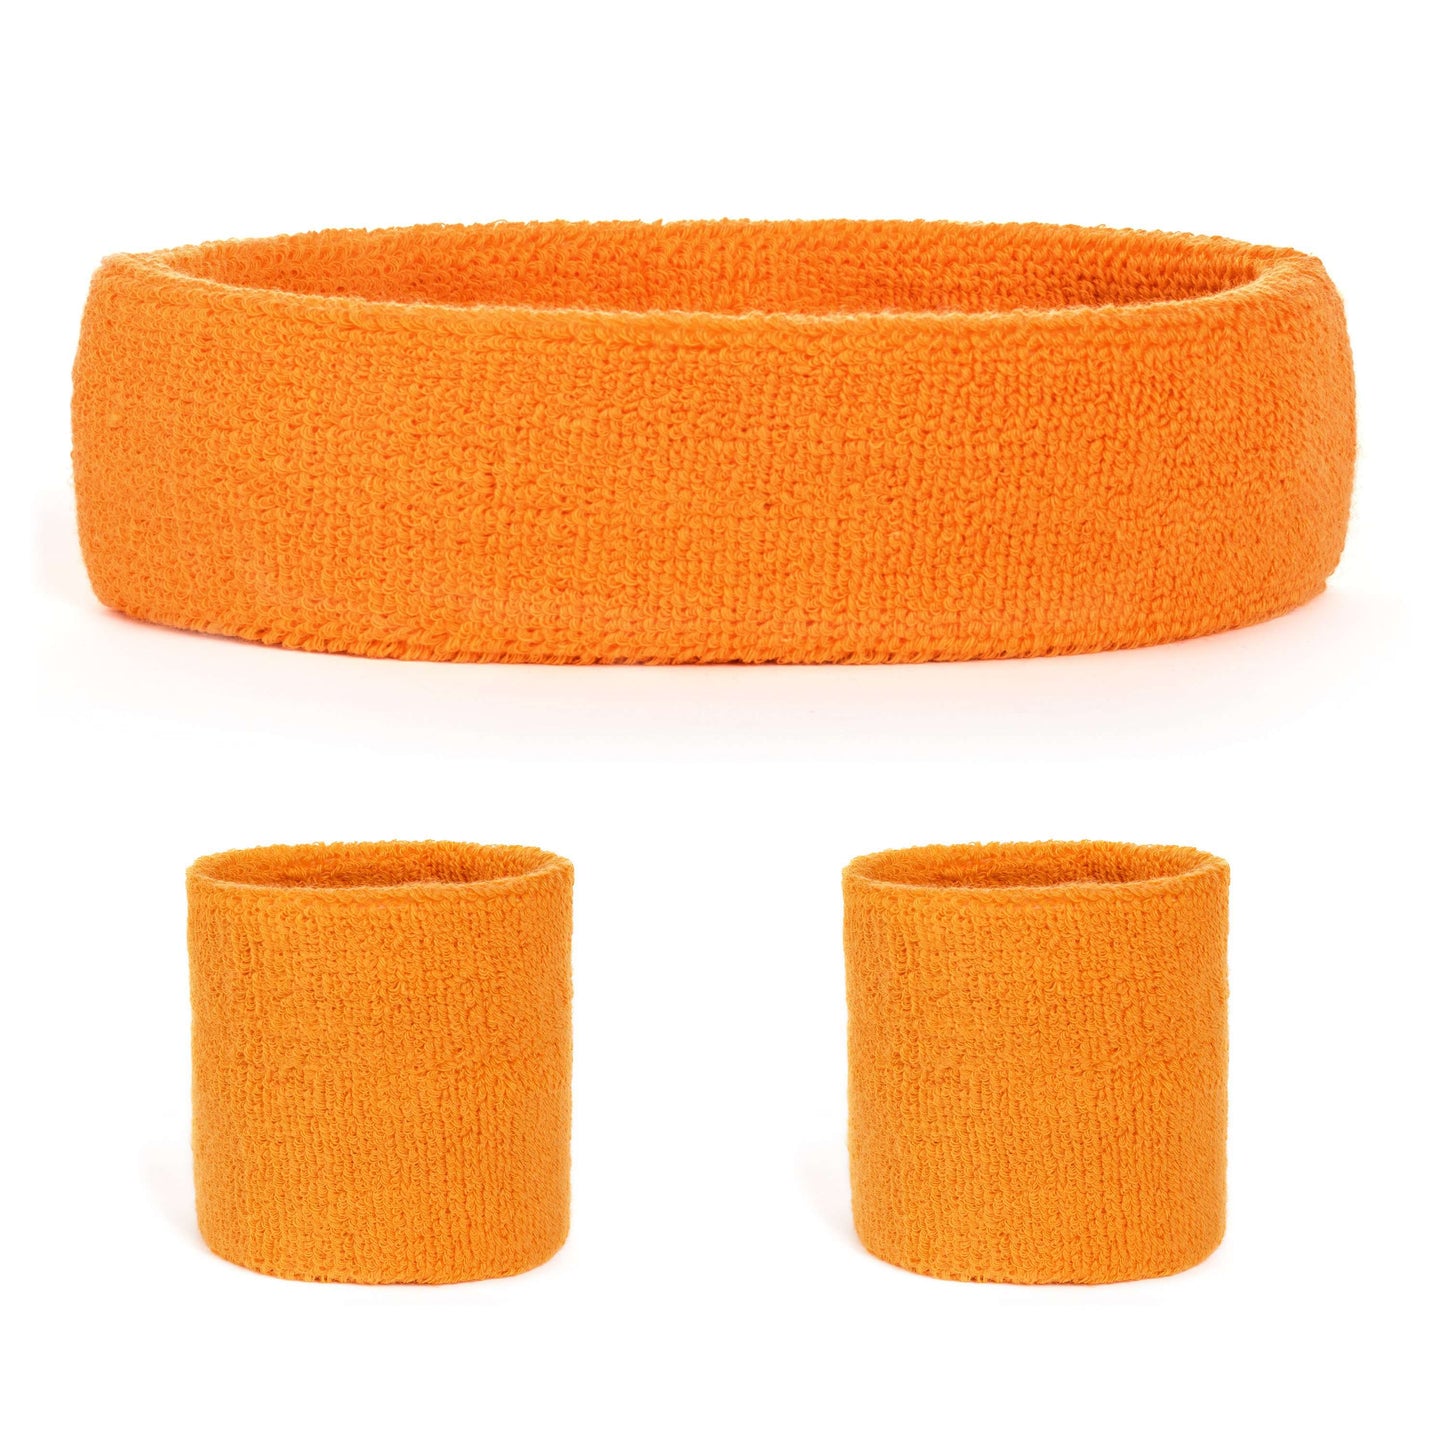 Suddora Sweatband Set (1 Headband & 2 Wristbands) - Neon Orange